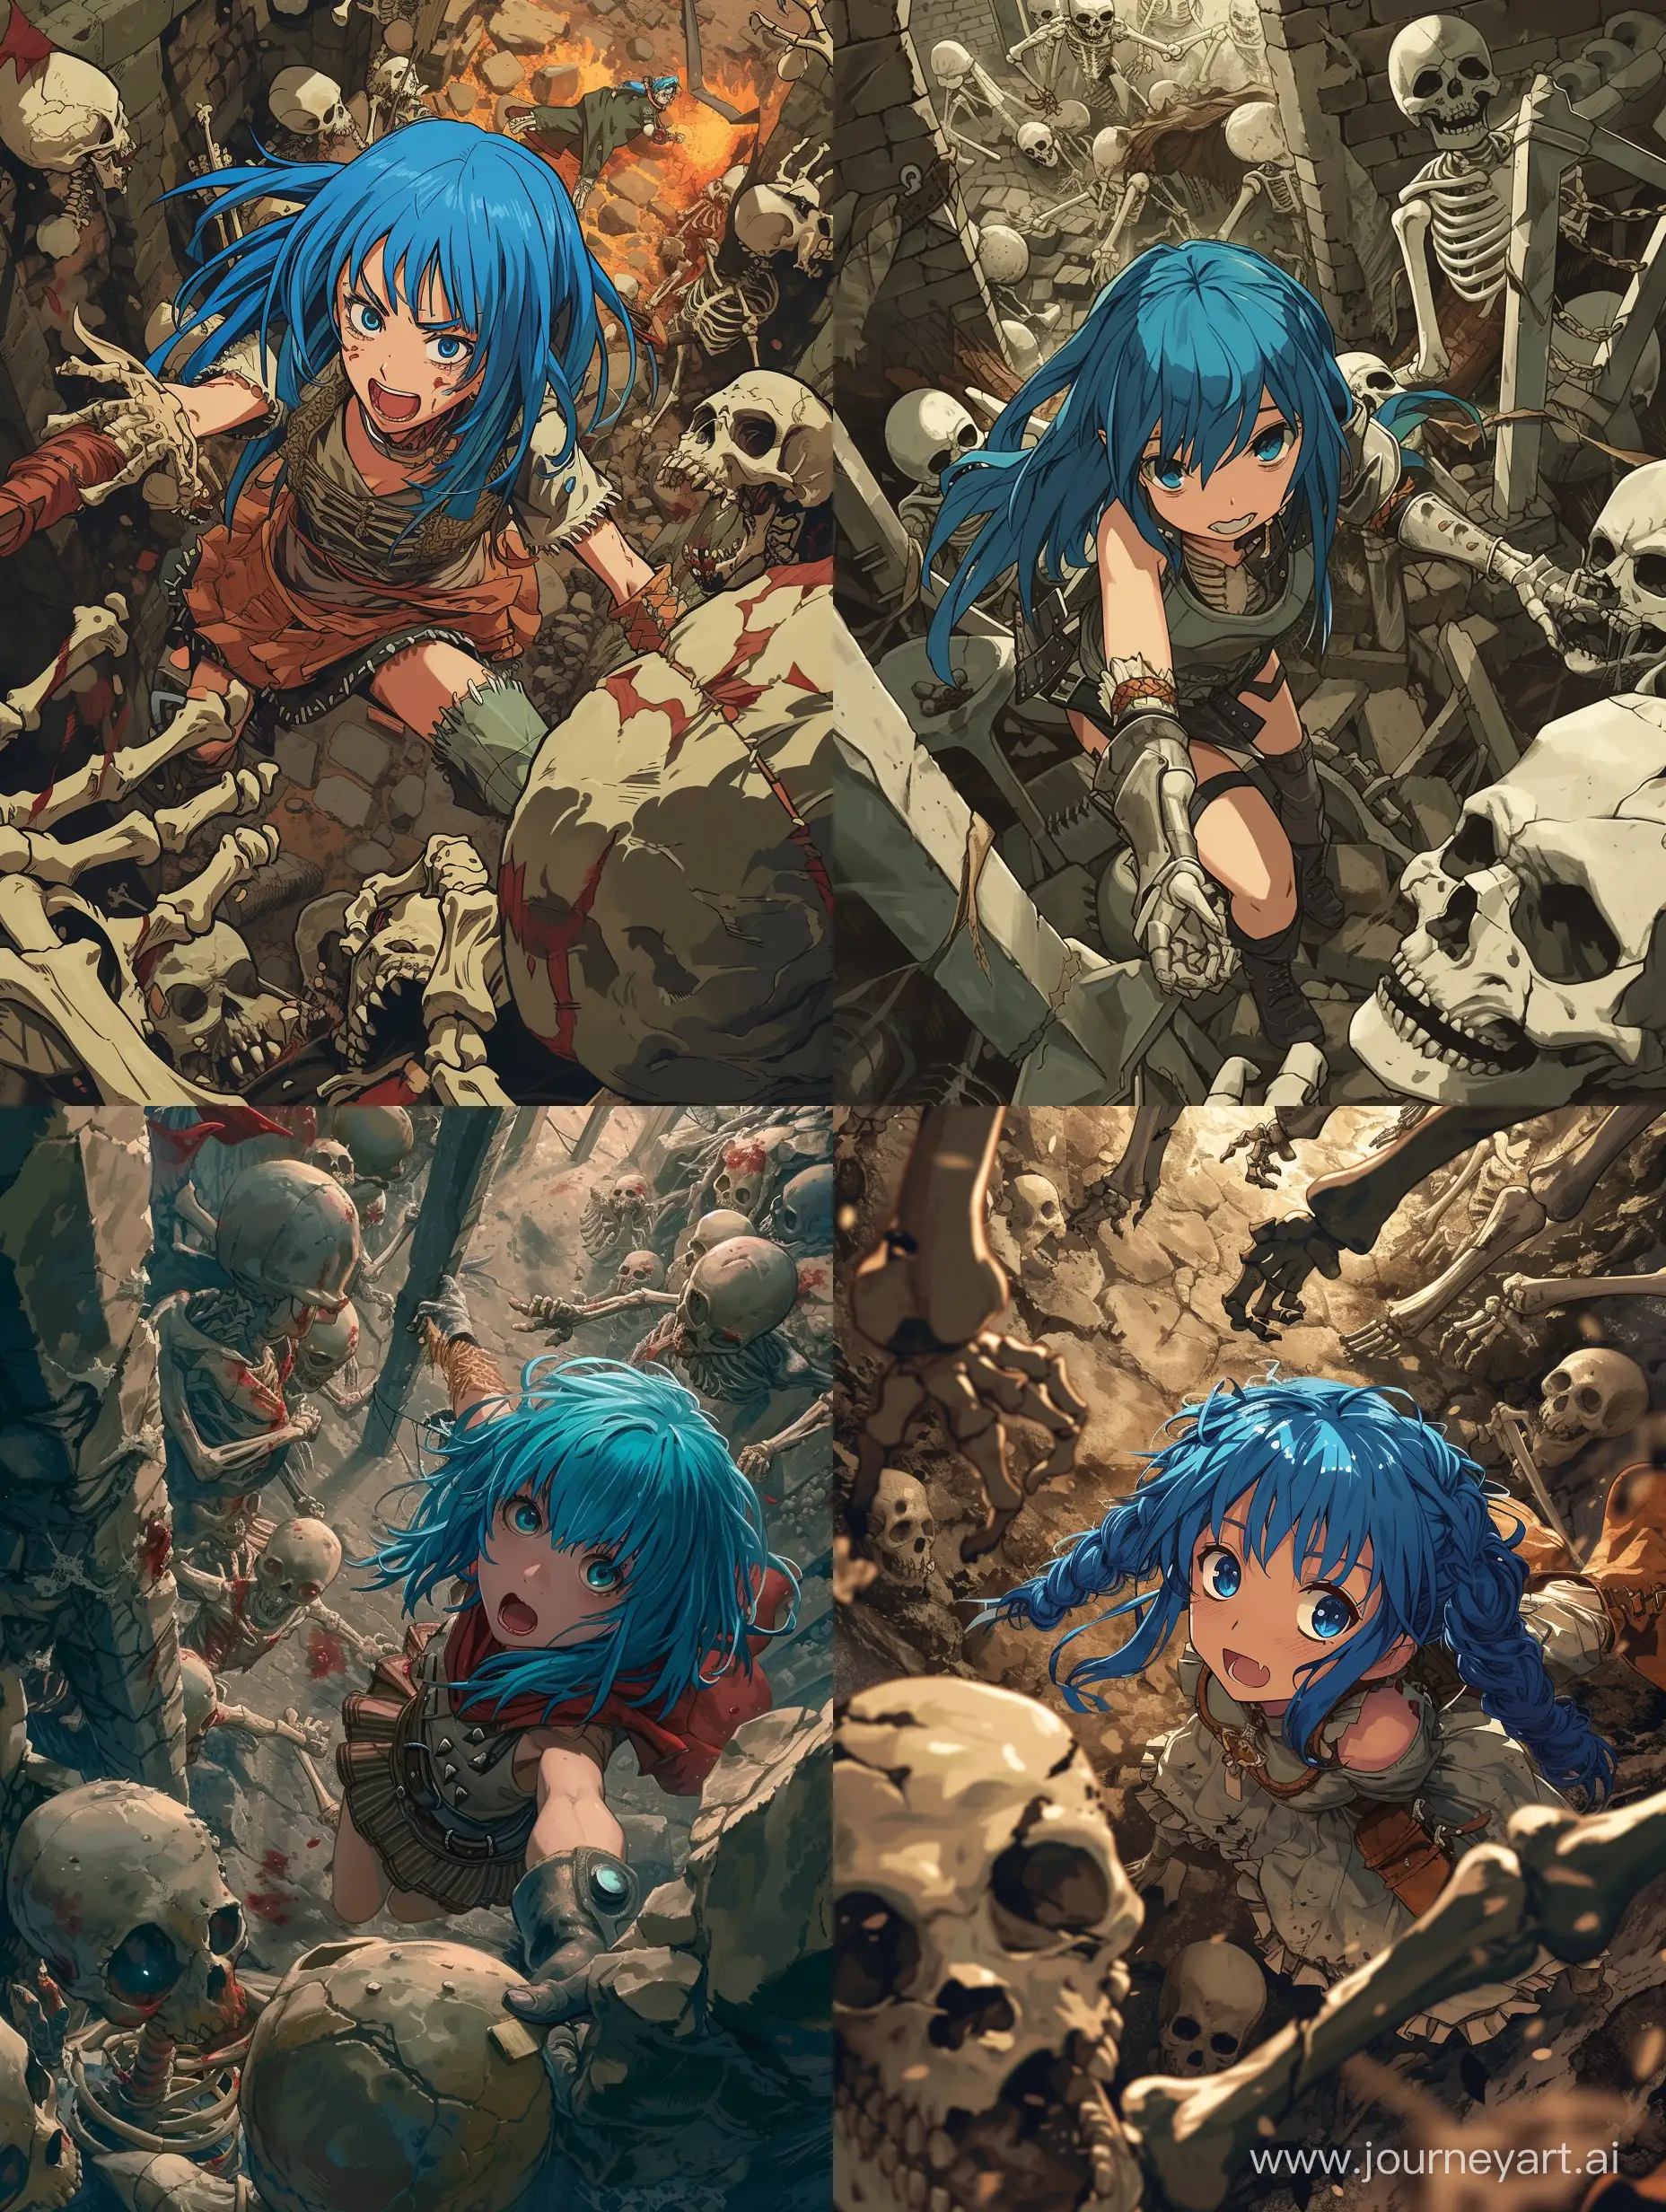 Аниме девушка с синими волосами является авантюристом и находится в тёмном подземелье где сражается с ордой скелетов и монстров, изображение в виде панорамы